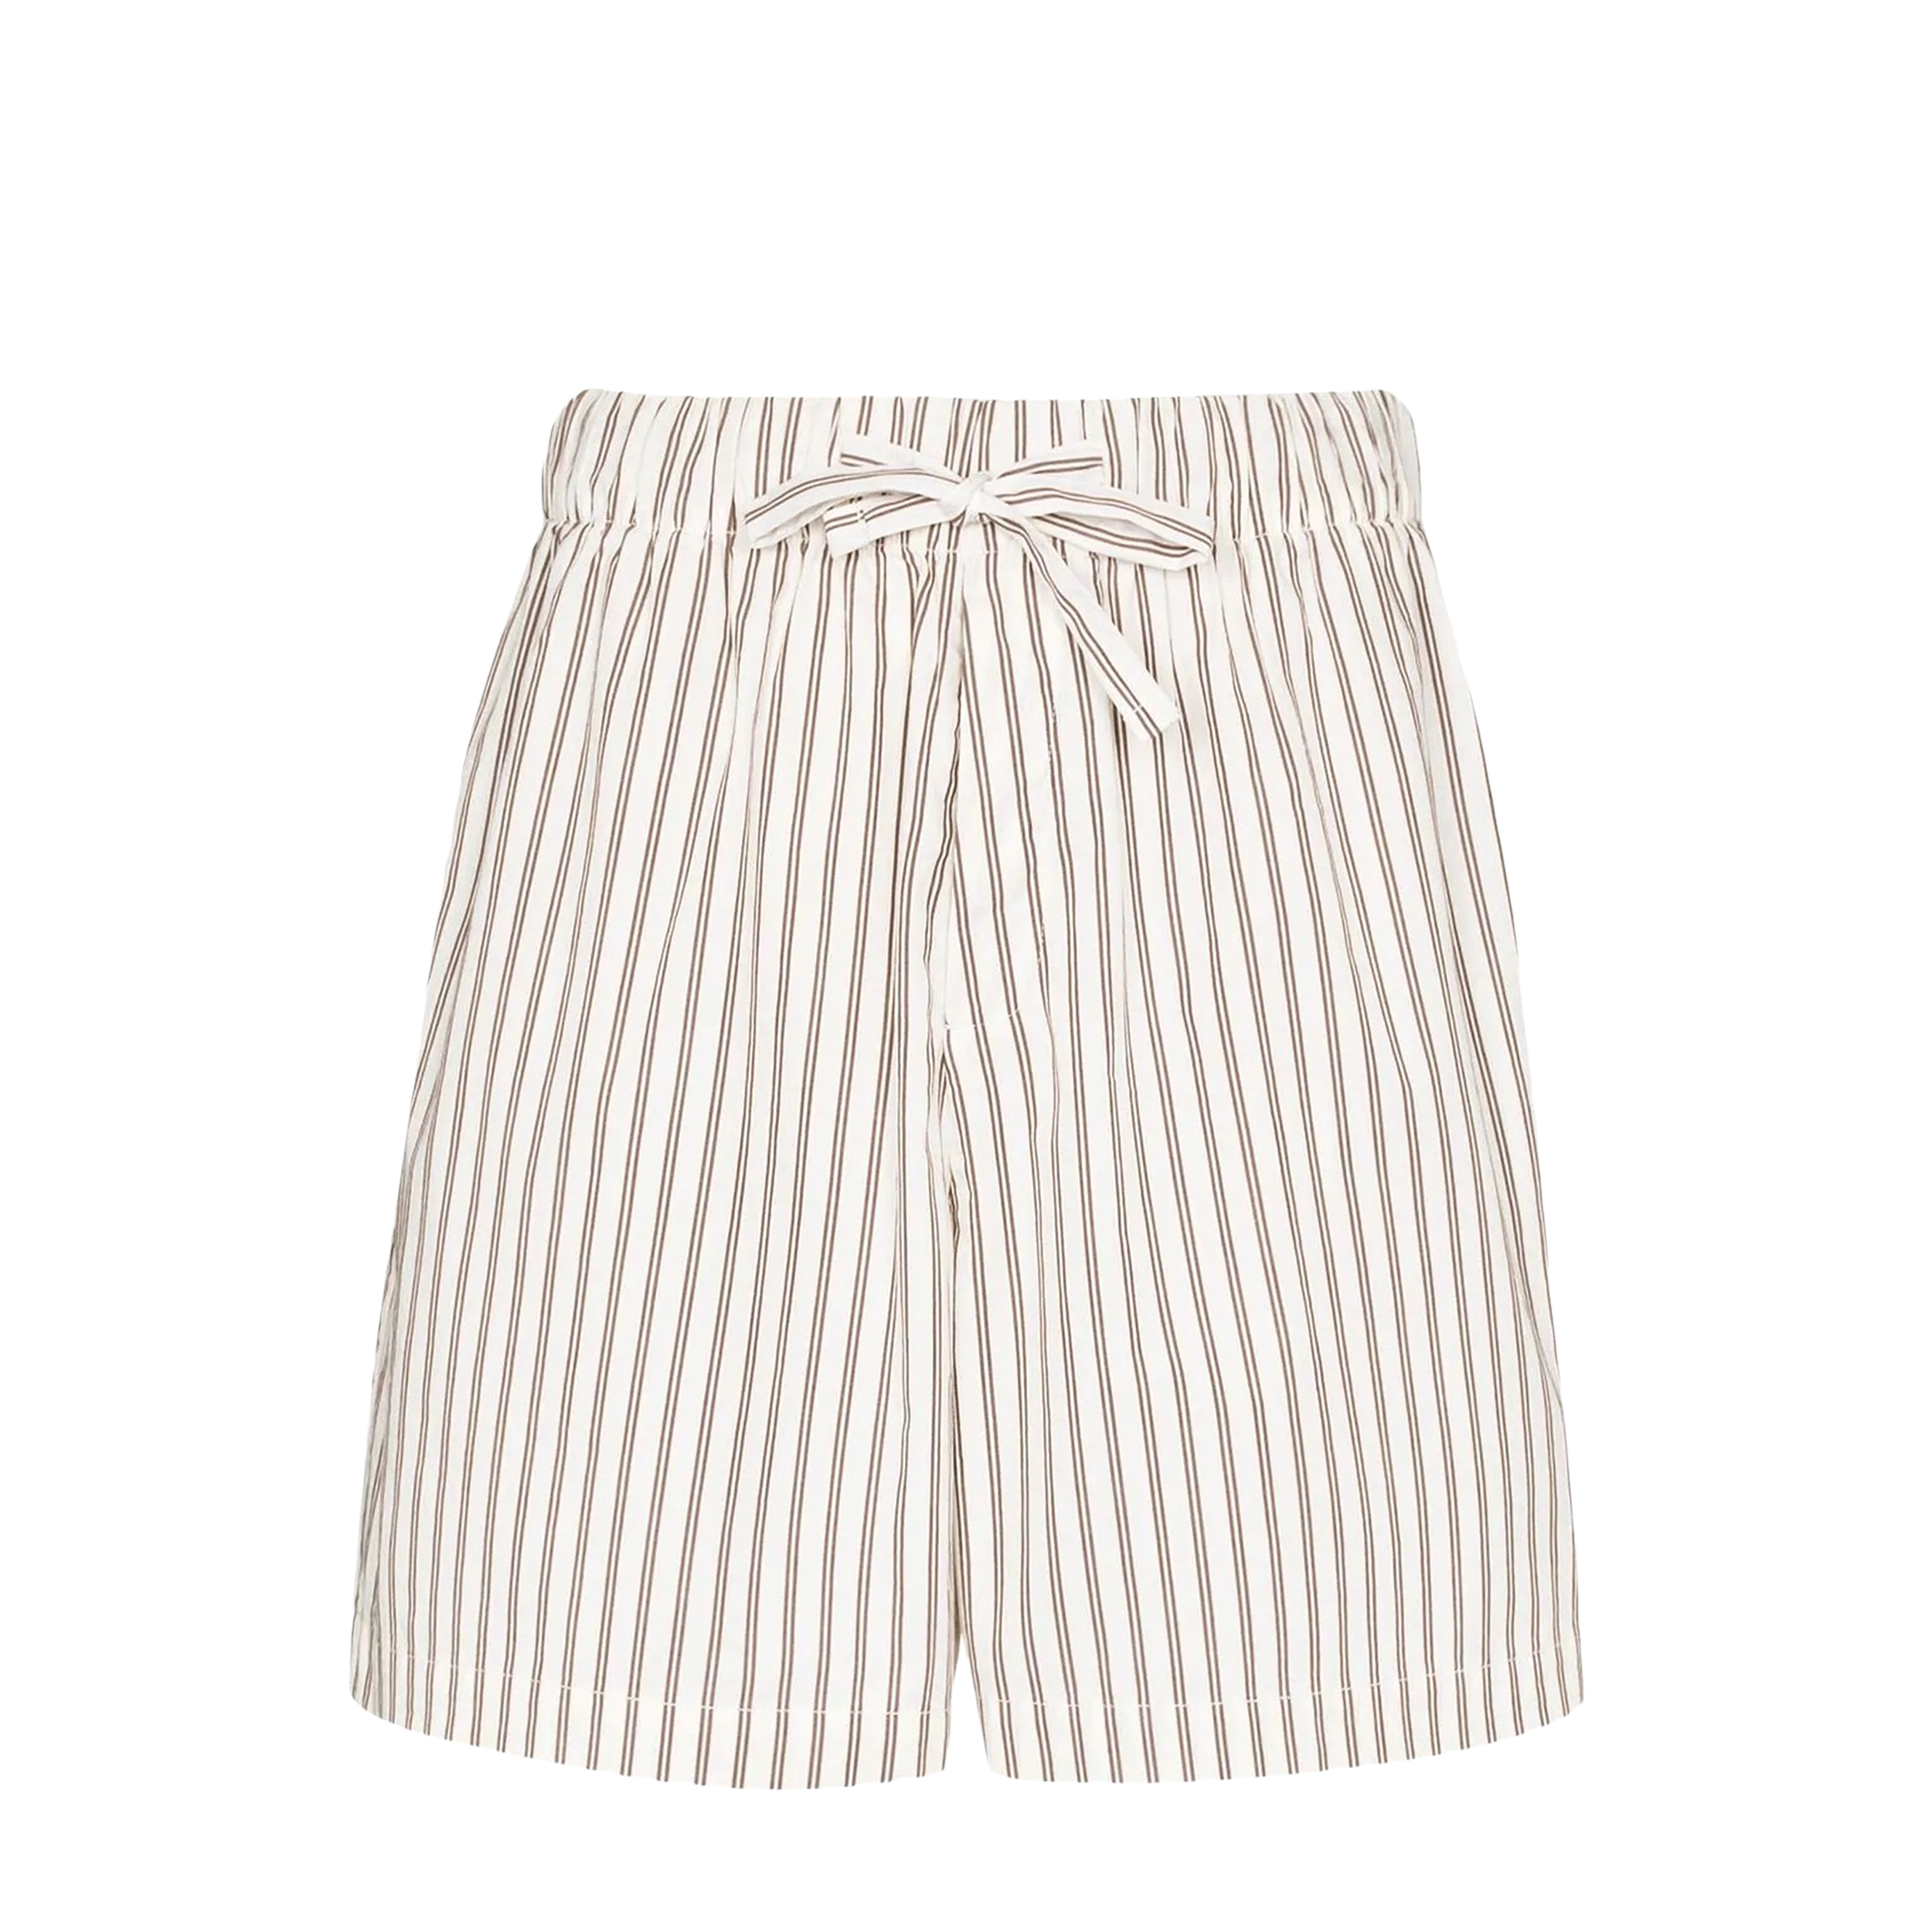 Tekla Tekla Poplin Pyjamas Shorts White & Brown Striped (L) SWS-HS Poplin Pyjamas Shorts White & Brown Striped (L) - фото 1